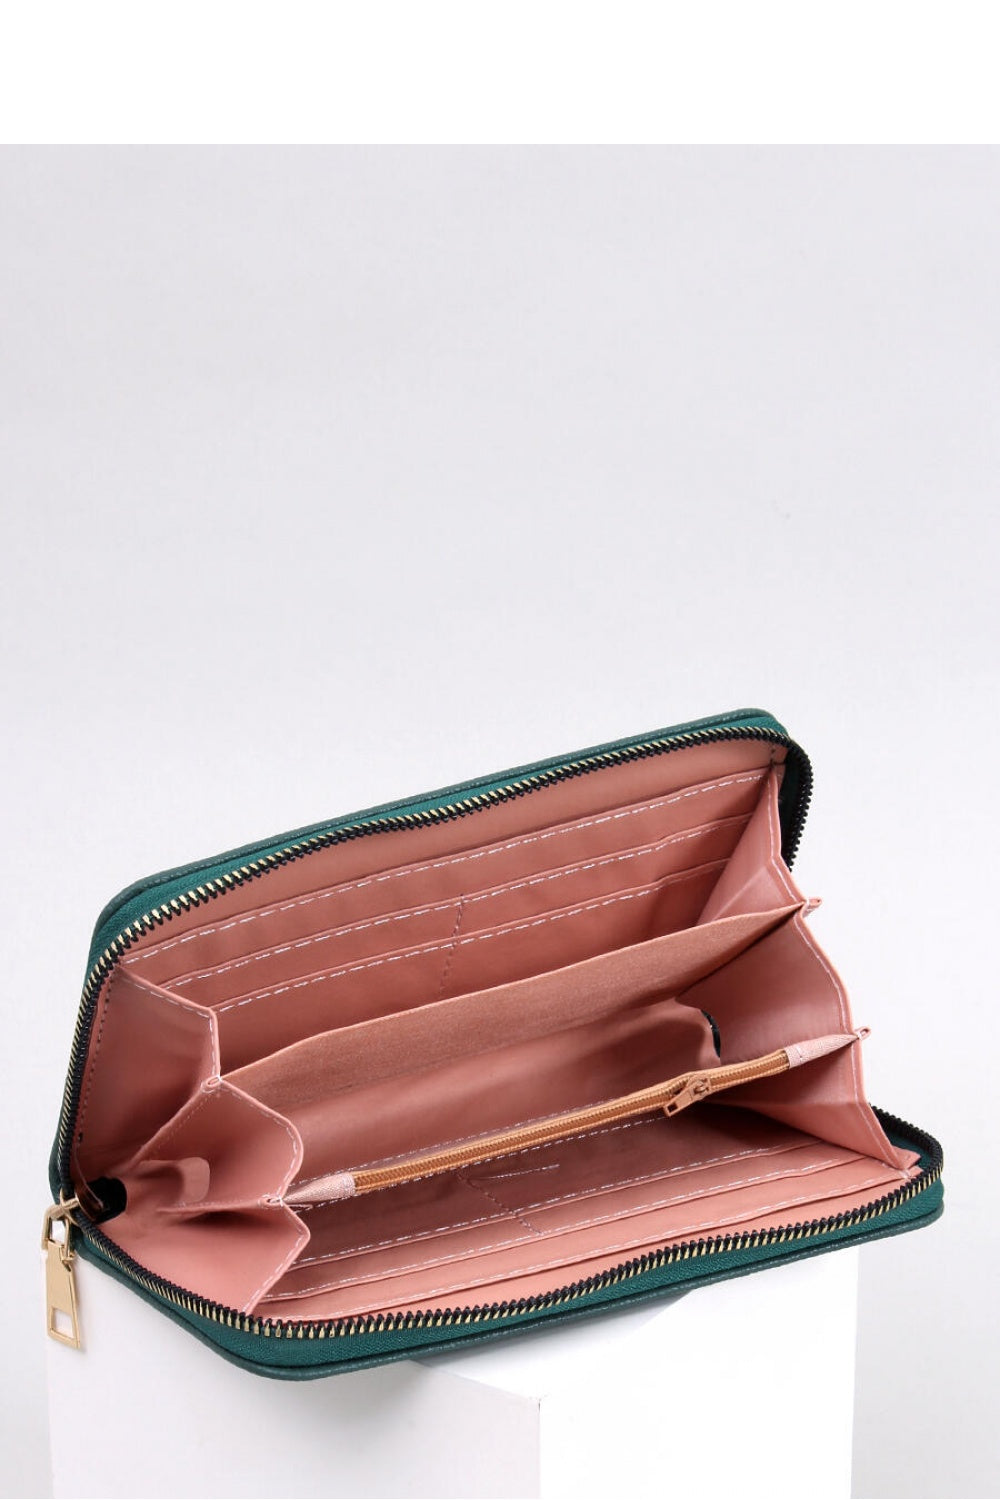 Women`s wallet model 182250 Elsy Style Wallets for Women, Purses, Belts